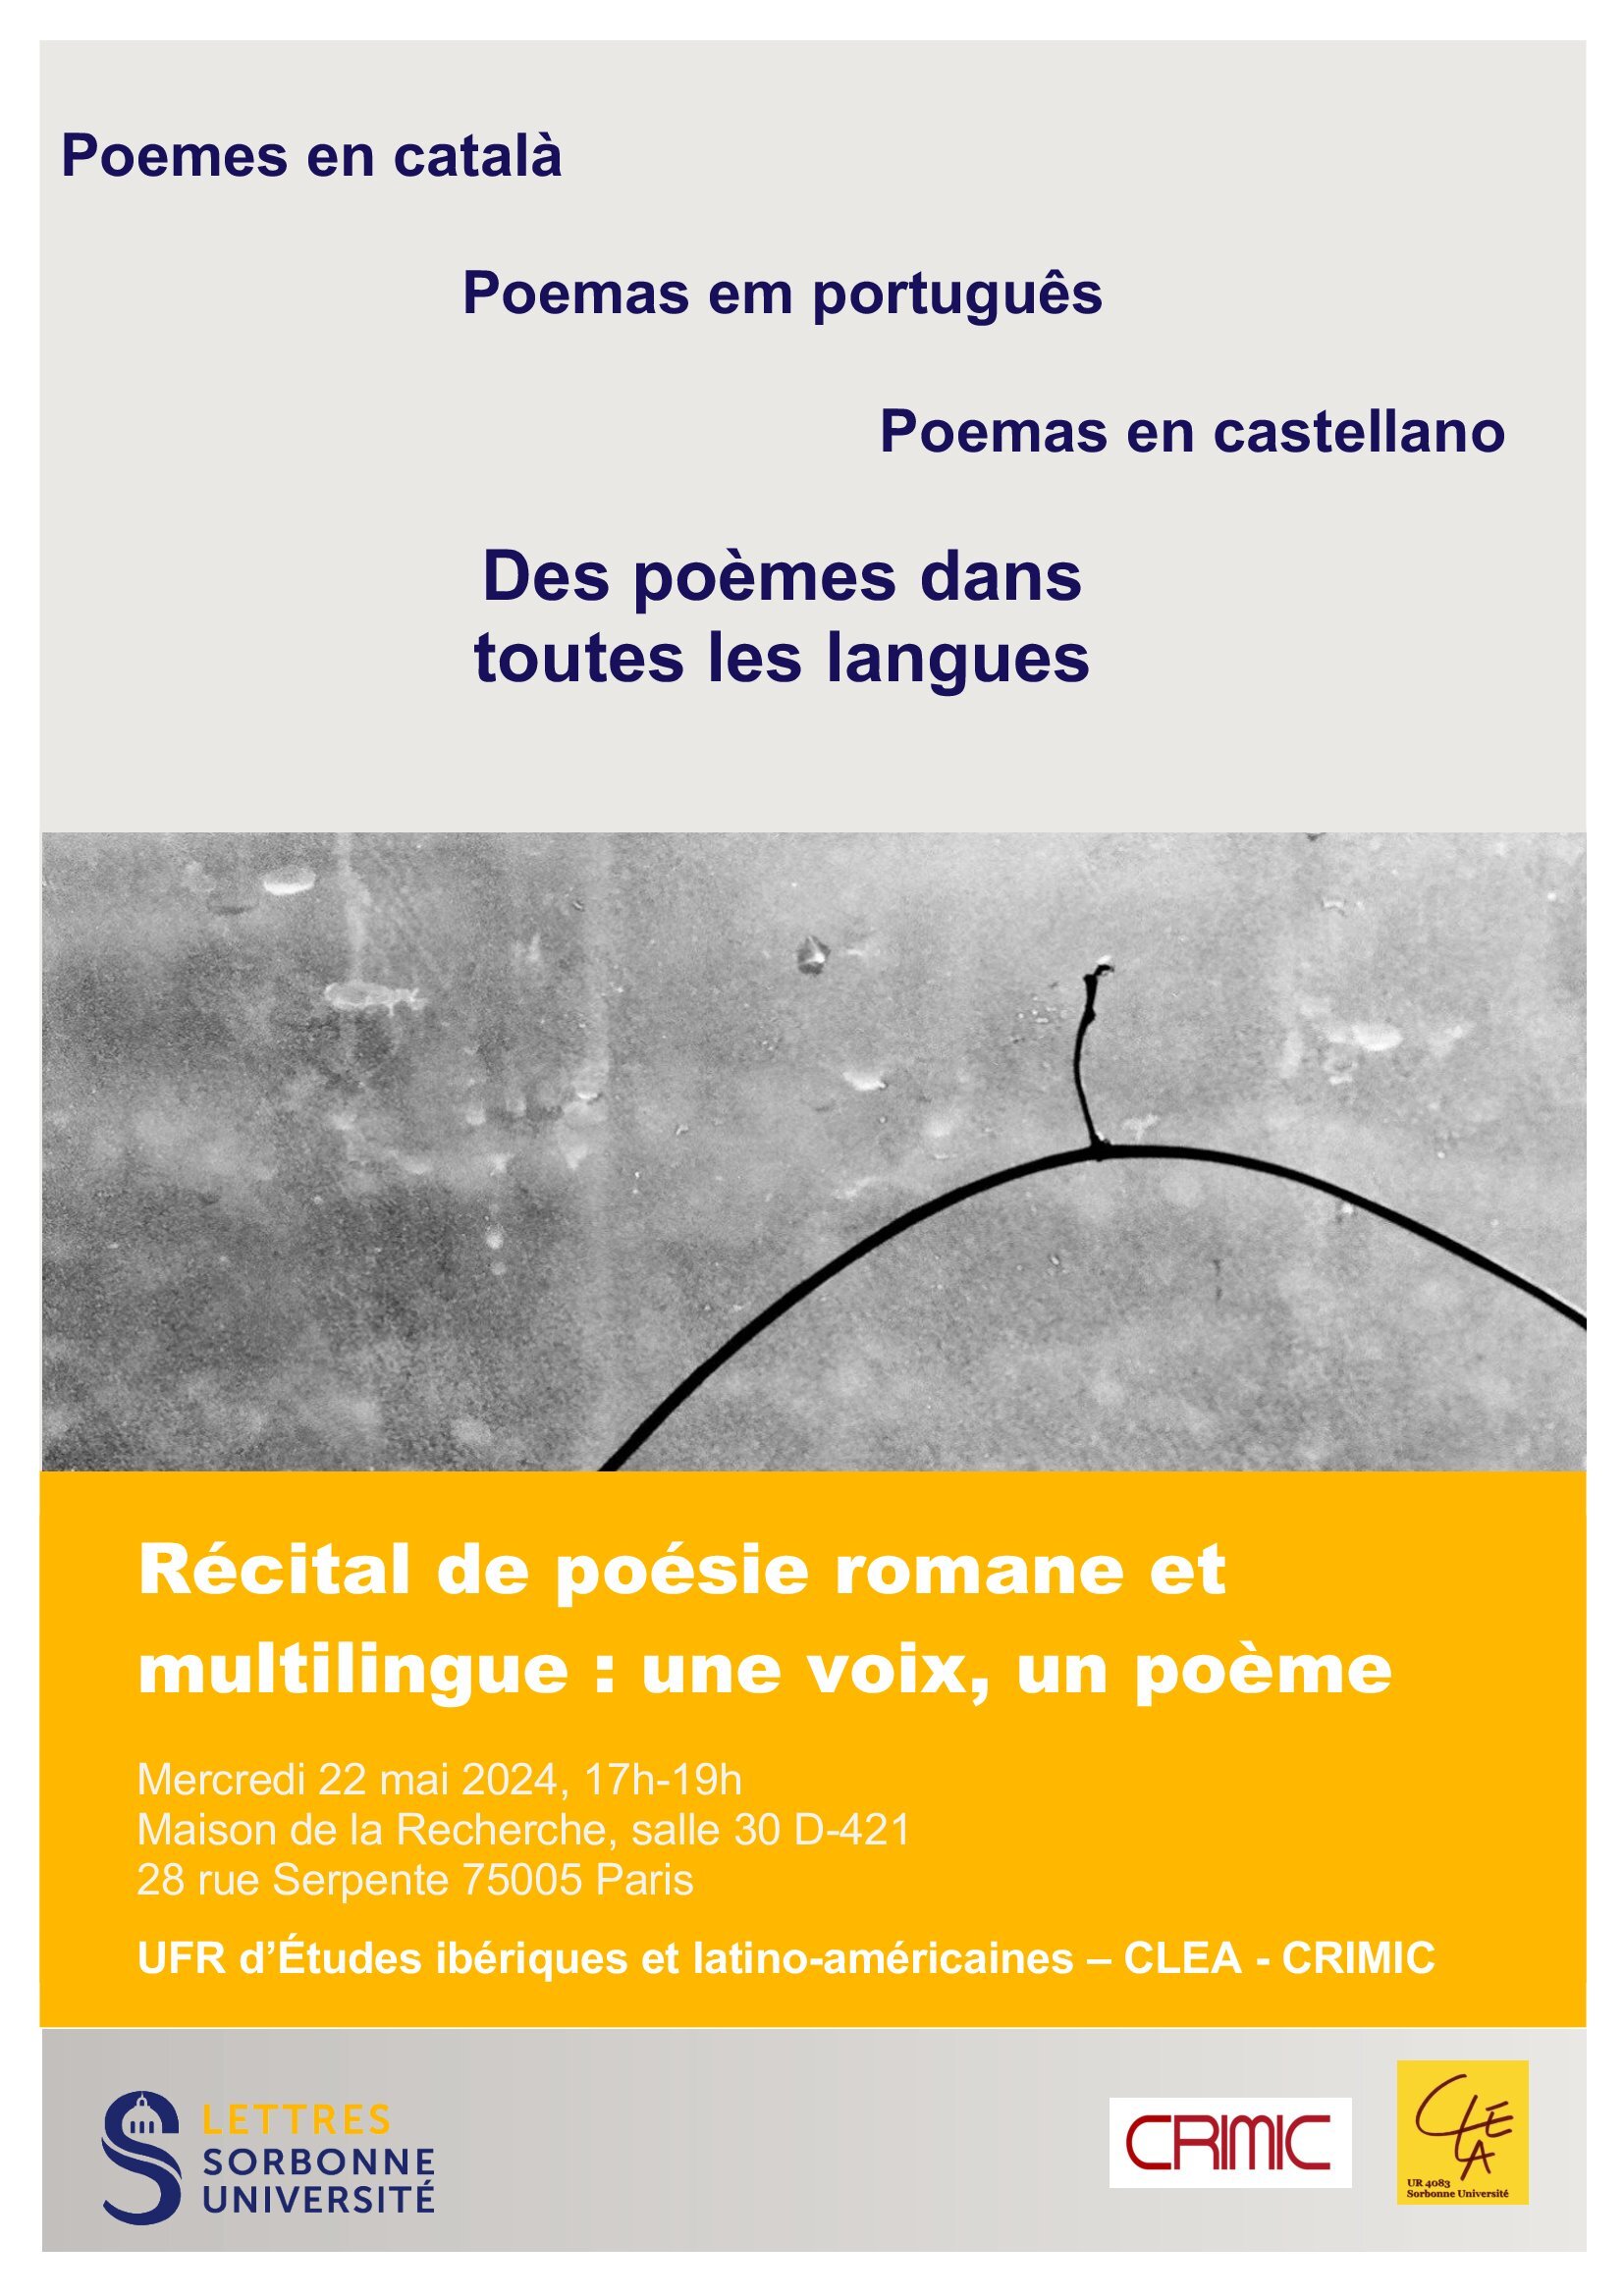 Premier "Récital de poésie romane et multilingue : un poème, une voix"